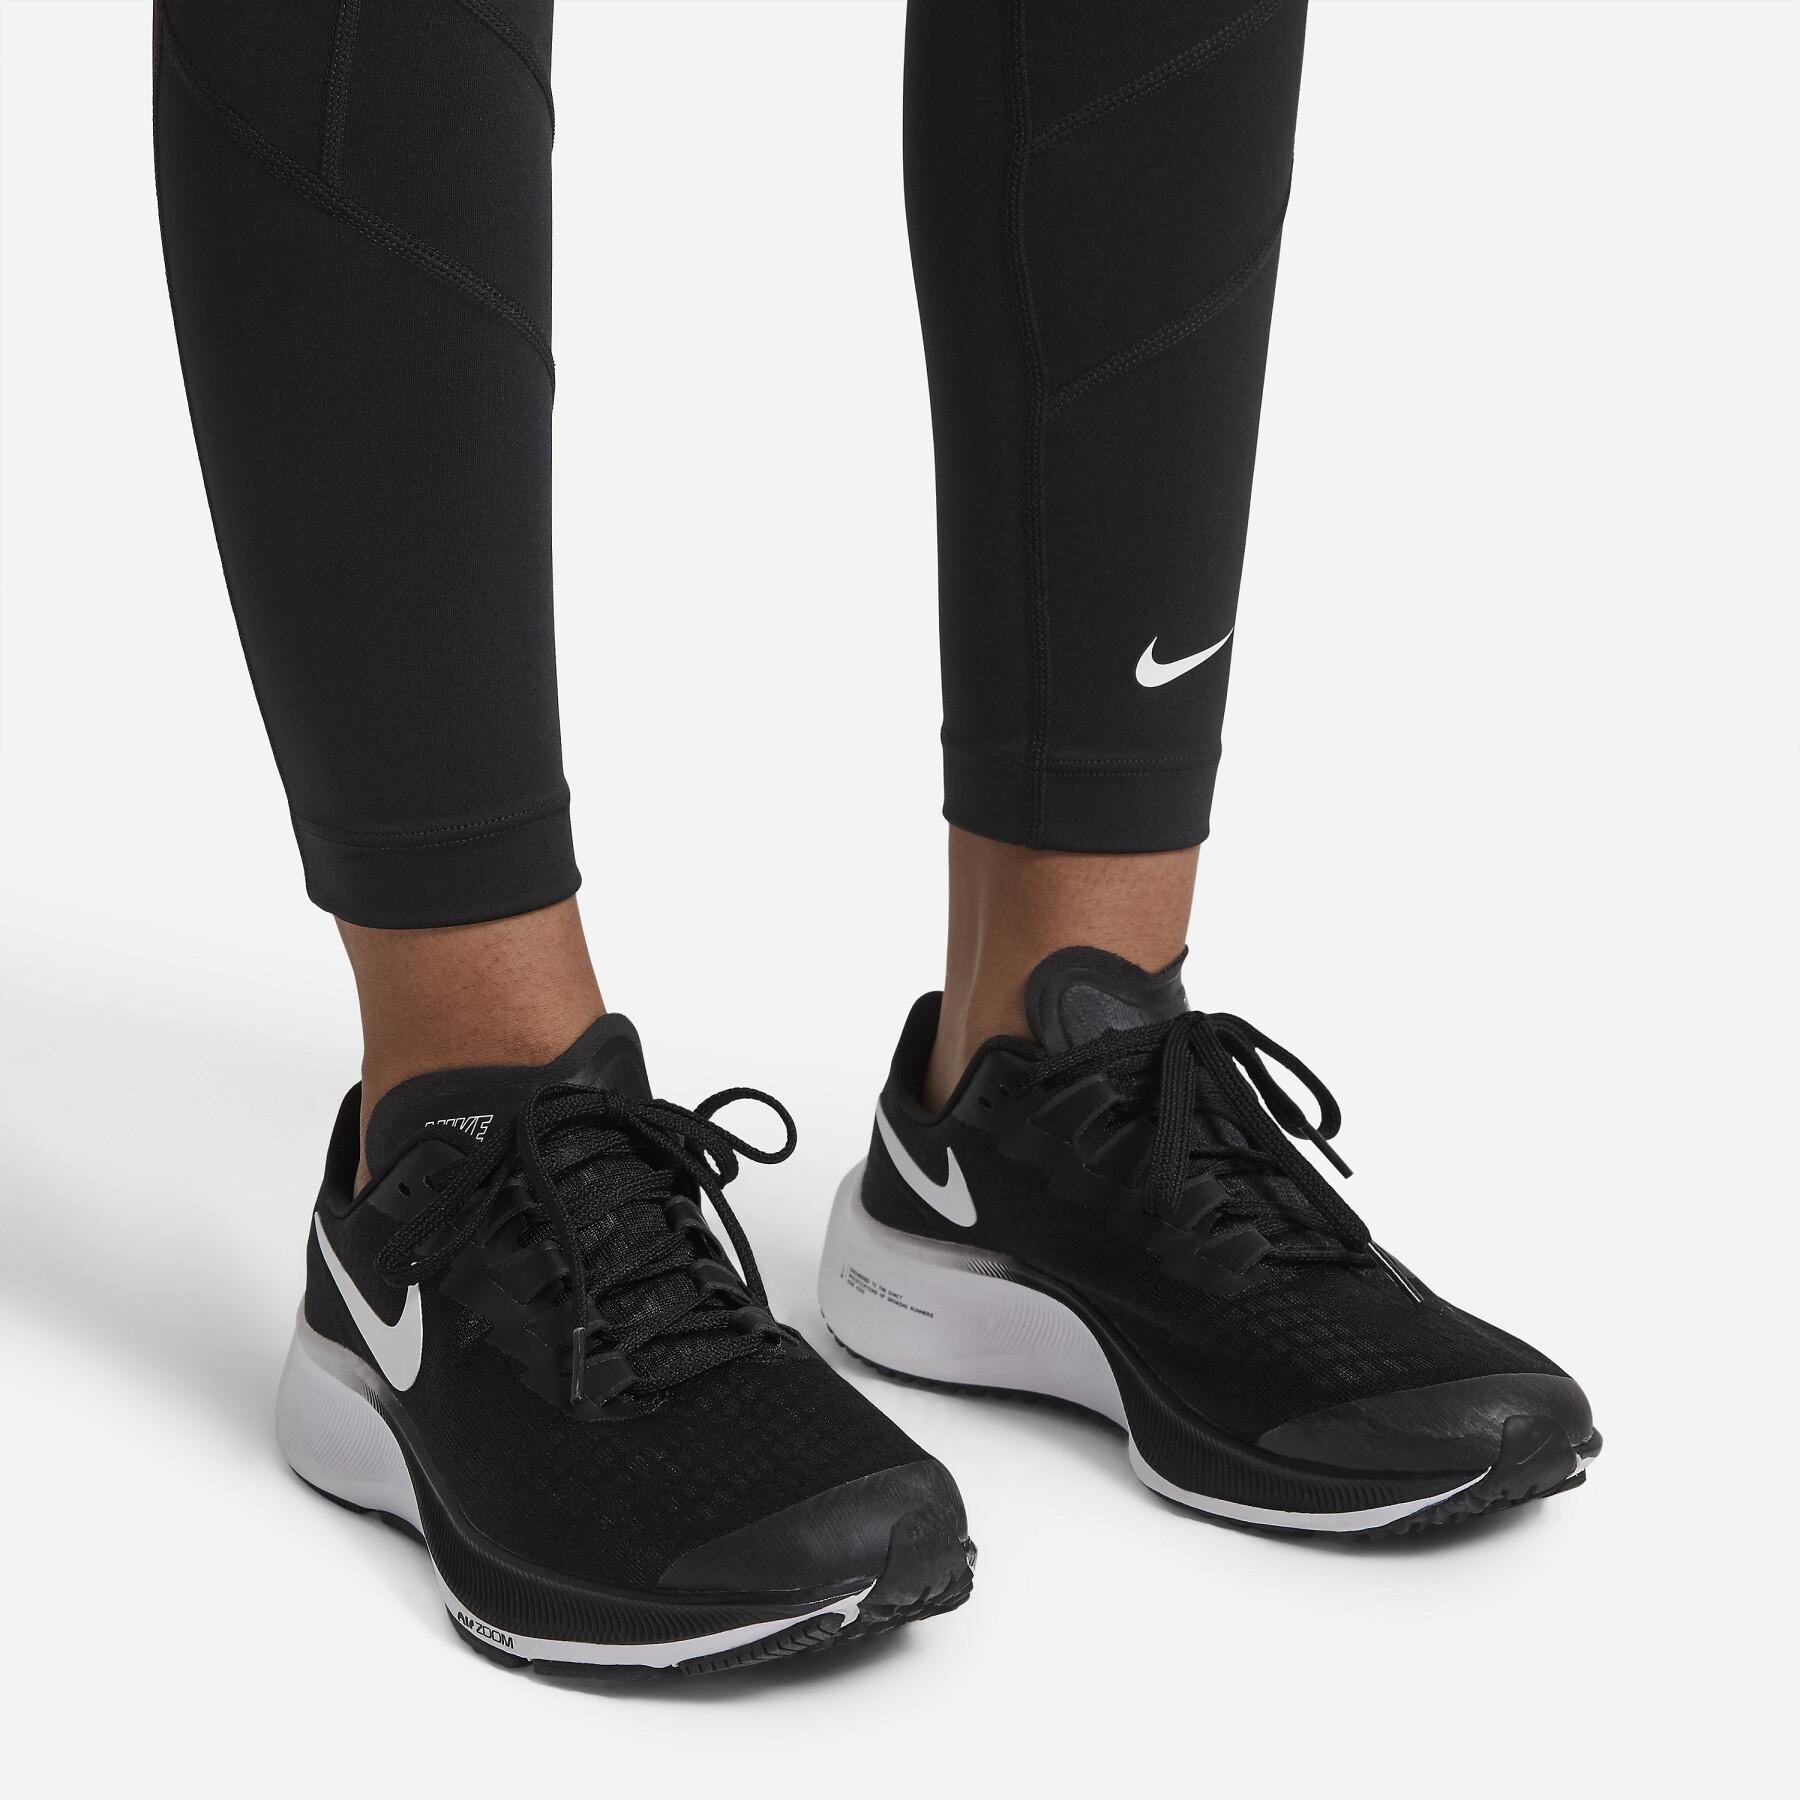 Legging fille Nike One